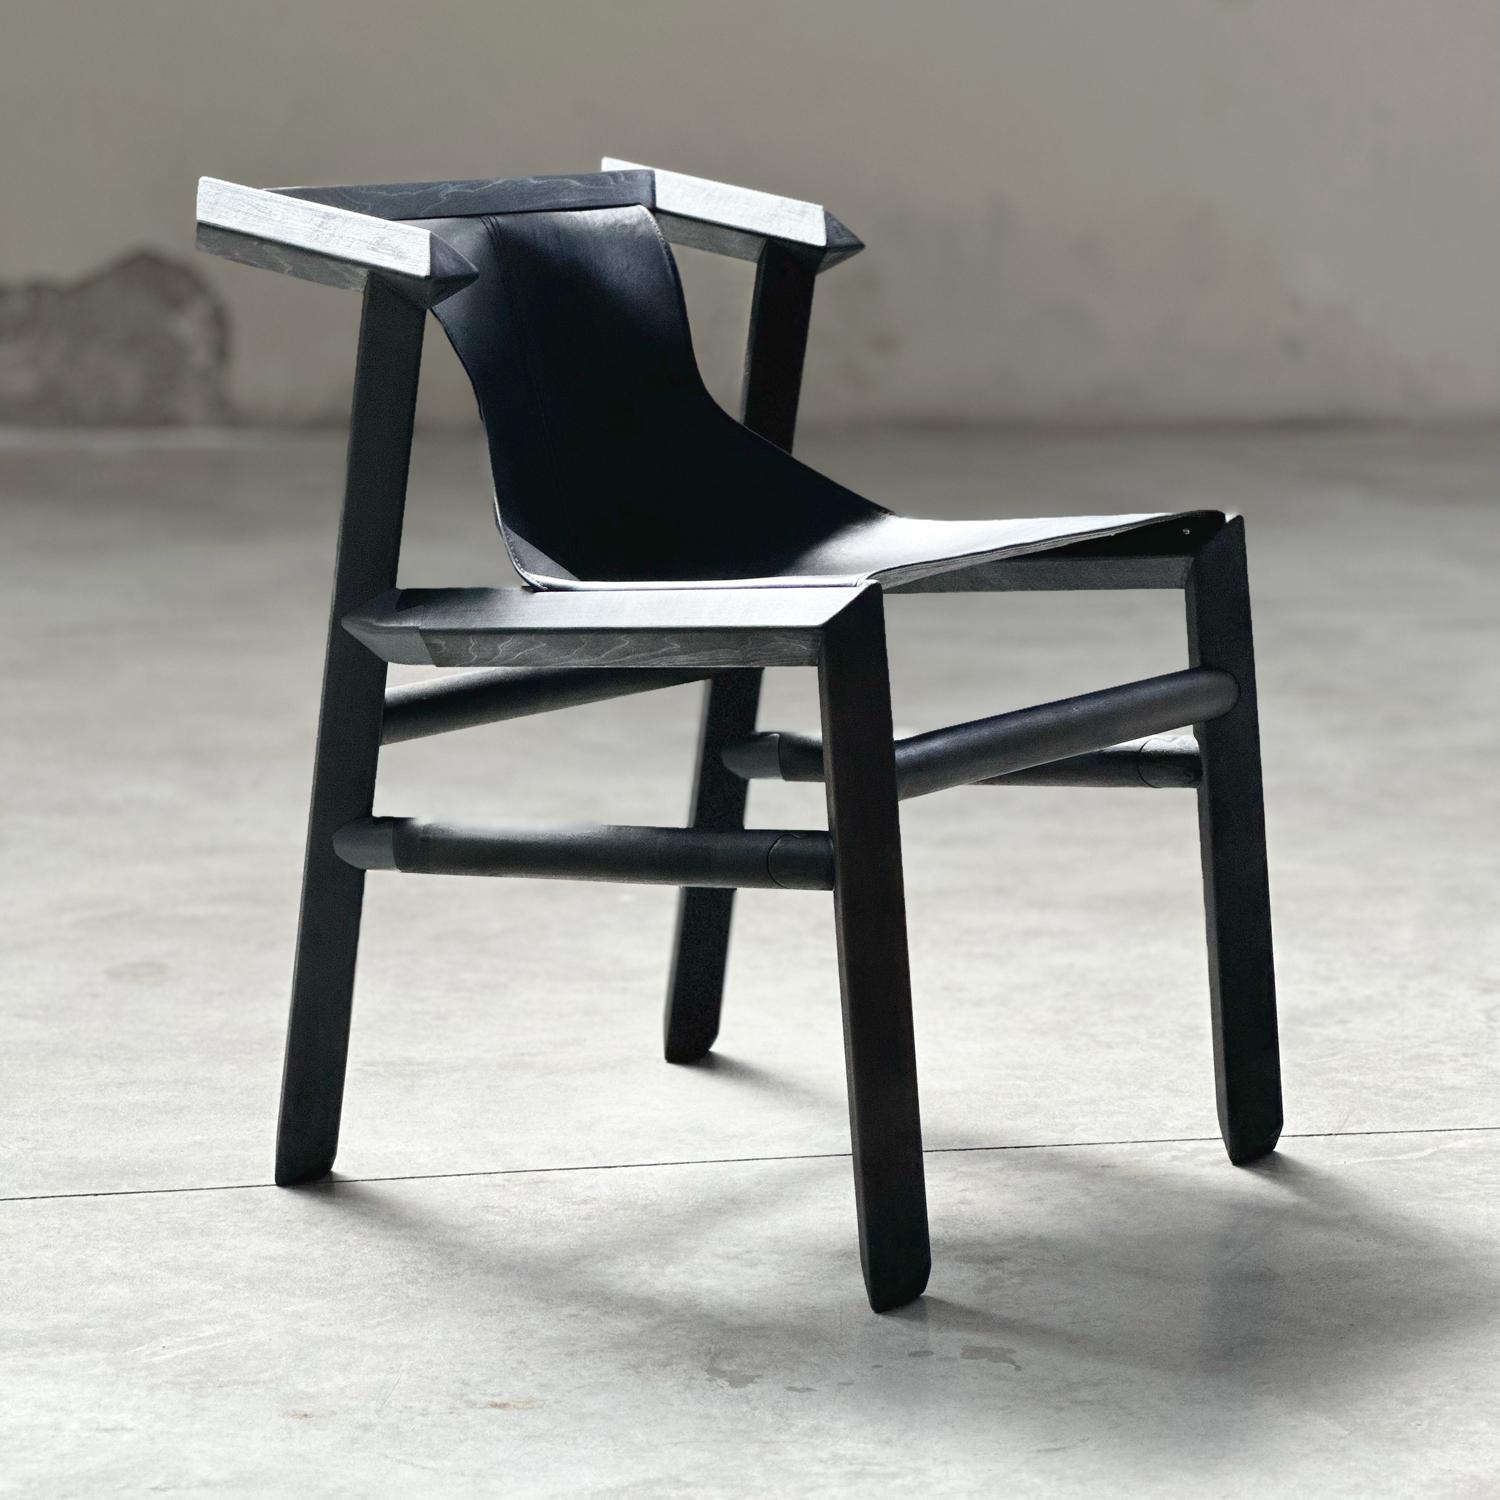 Das Stuhlmodell BLACK 1901 wurde auf der ICFF - Wanted Design Fair 2022, während der New Yorker Designwoche, vorgestellt.
Jeder Stuhl wird von seinem Schöpfer und seinem Team in der Werkstatt von espina corona unter SLOW MADE Standards und mit